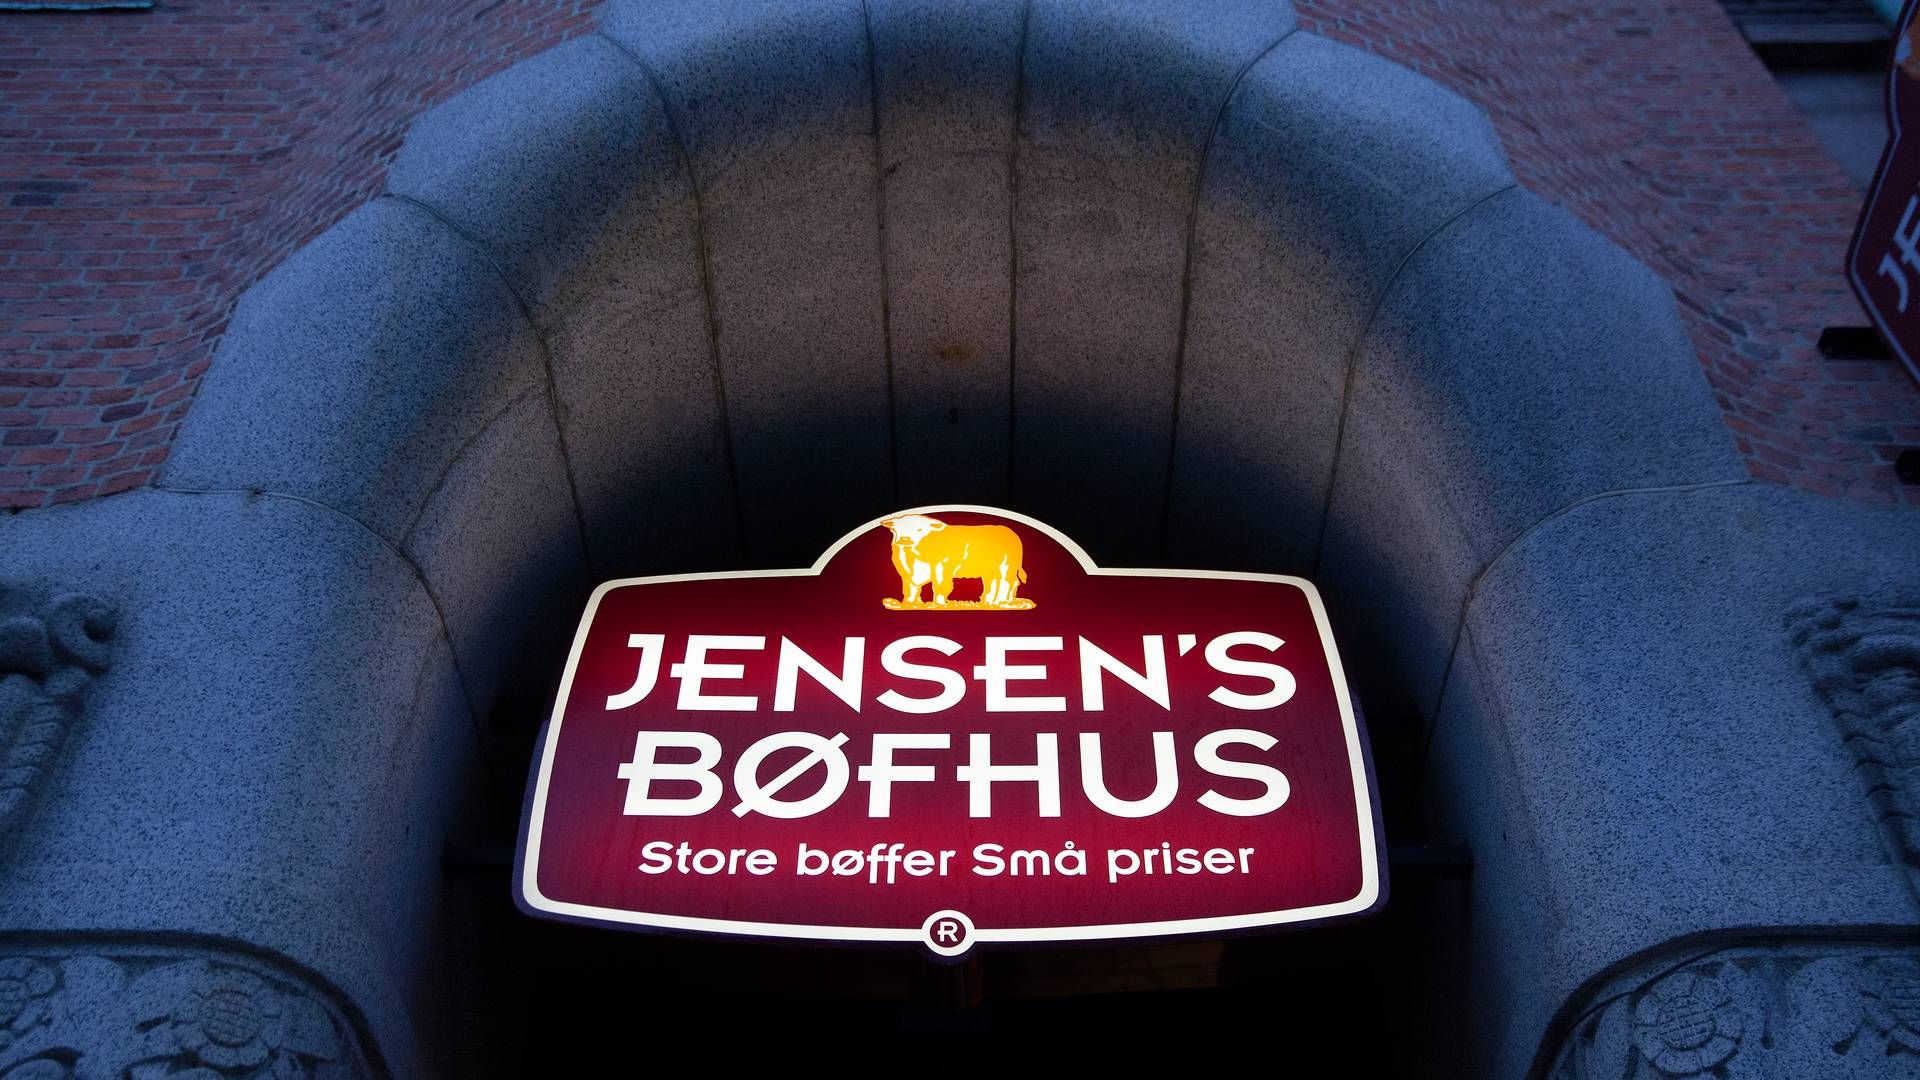 New Start 3, der ejer Jensens Bøfhus og Jensens Food Group, mister flere fynske ejerfamilier. | Foto: Finn Frandsen